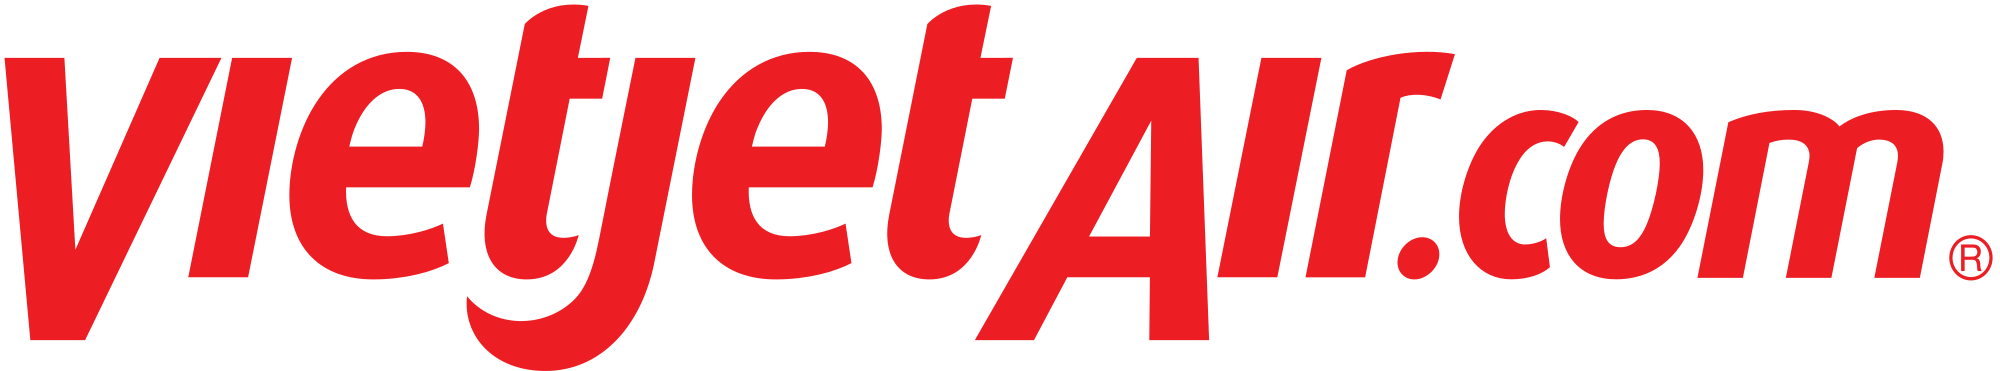 VietJet Air 4 